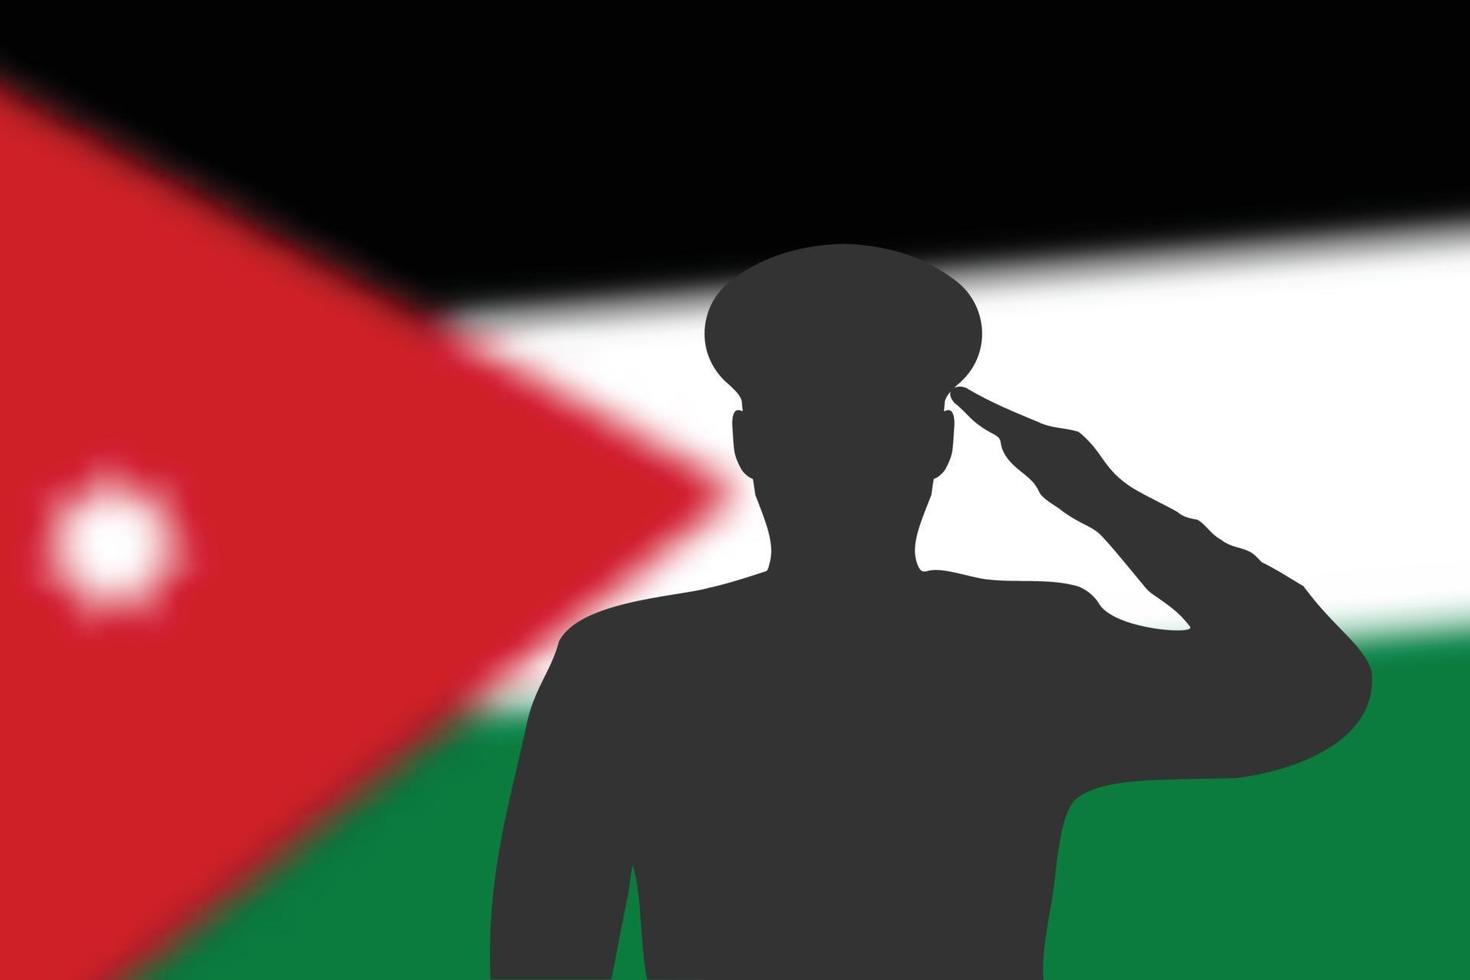 silueta de soldadura sobre fondo borroso con la bandera de jordania. vector